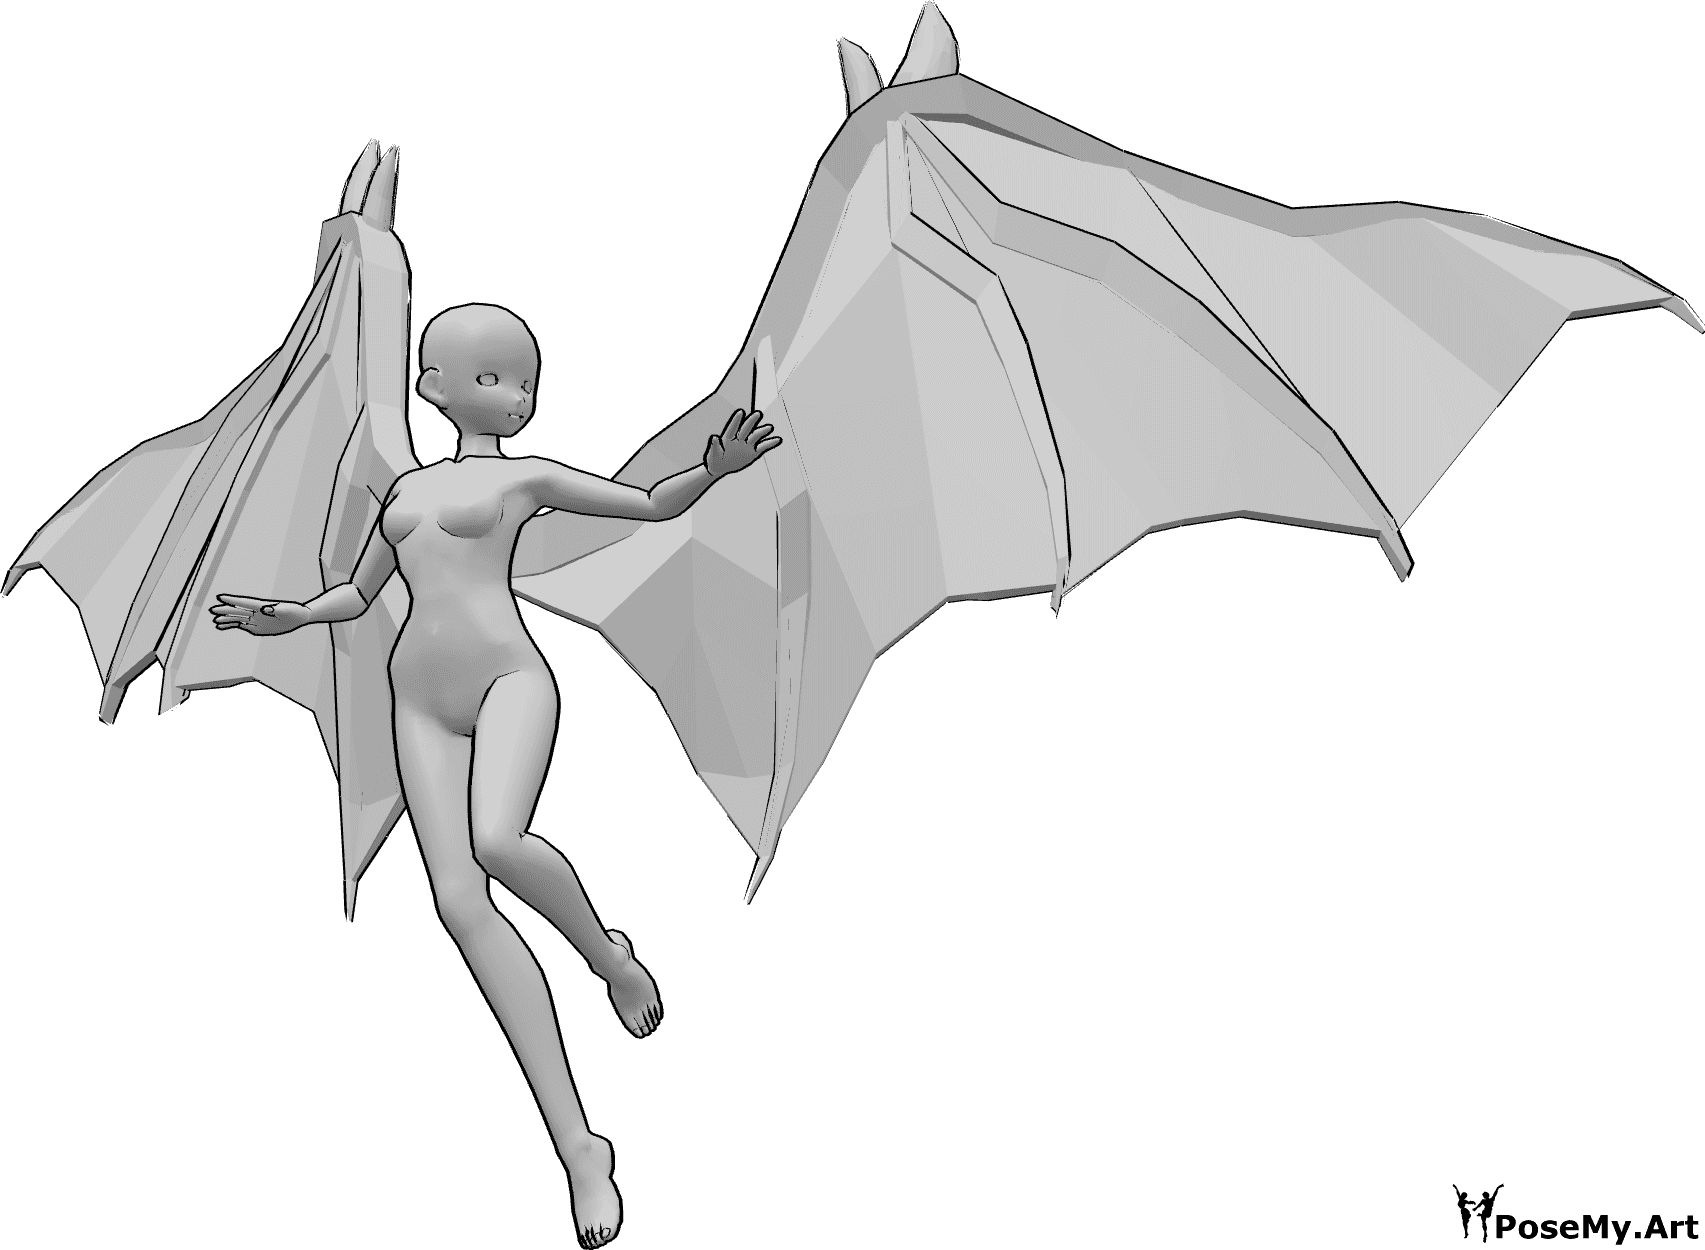 Referencia de poses- Postura de vuelo de aspecto anime - Mujer anime con alas de diablo está volando y mirando a la izquierda